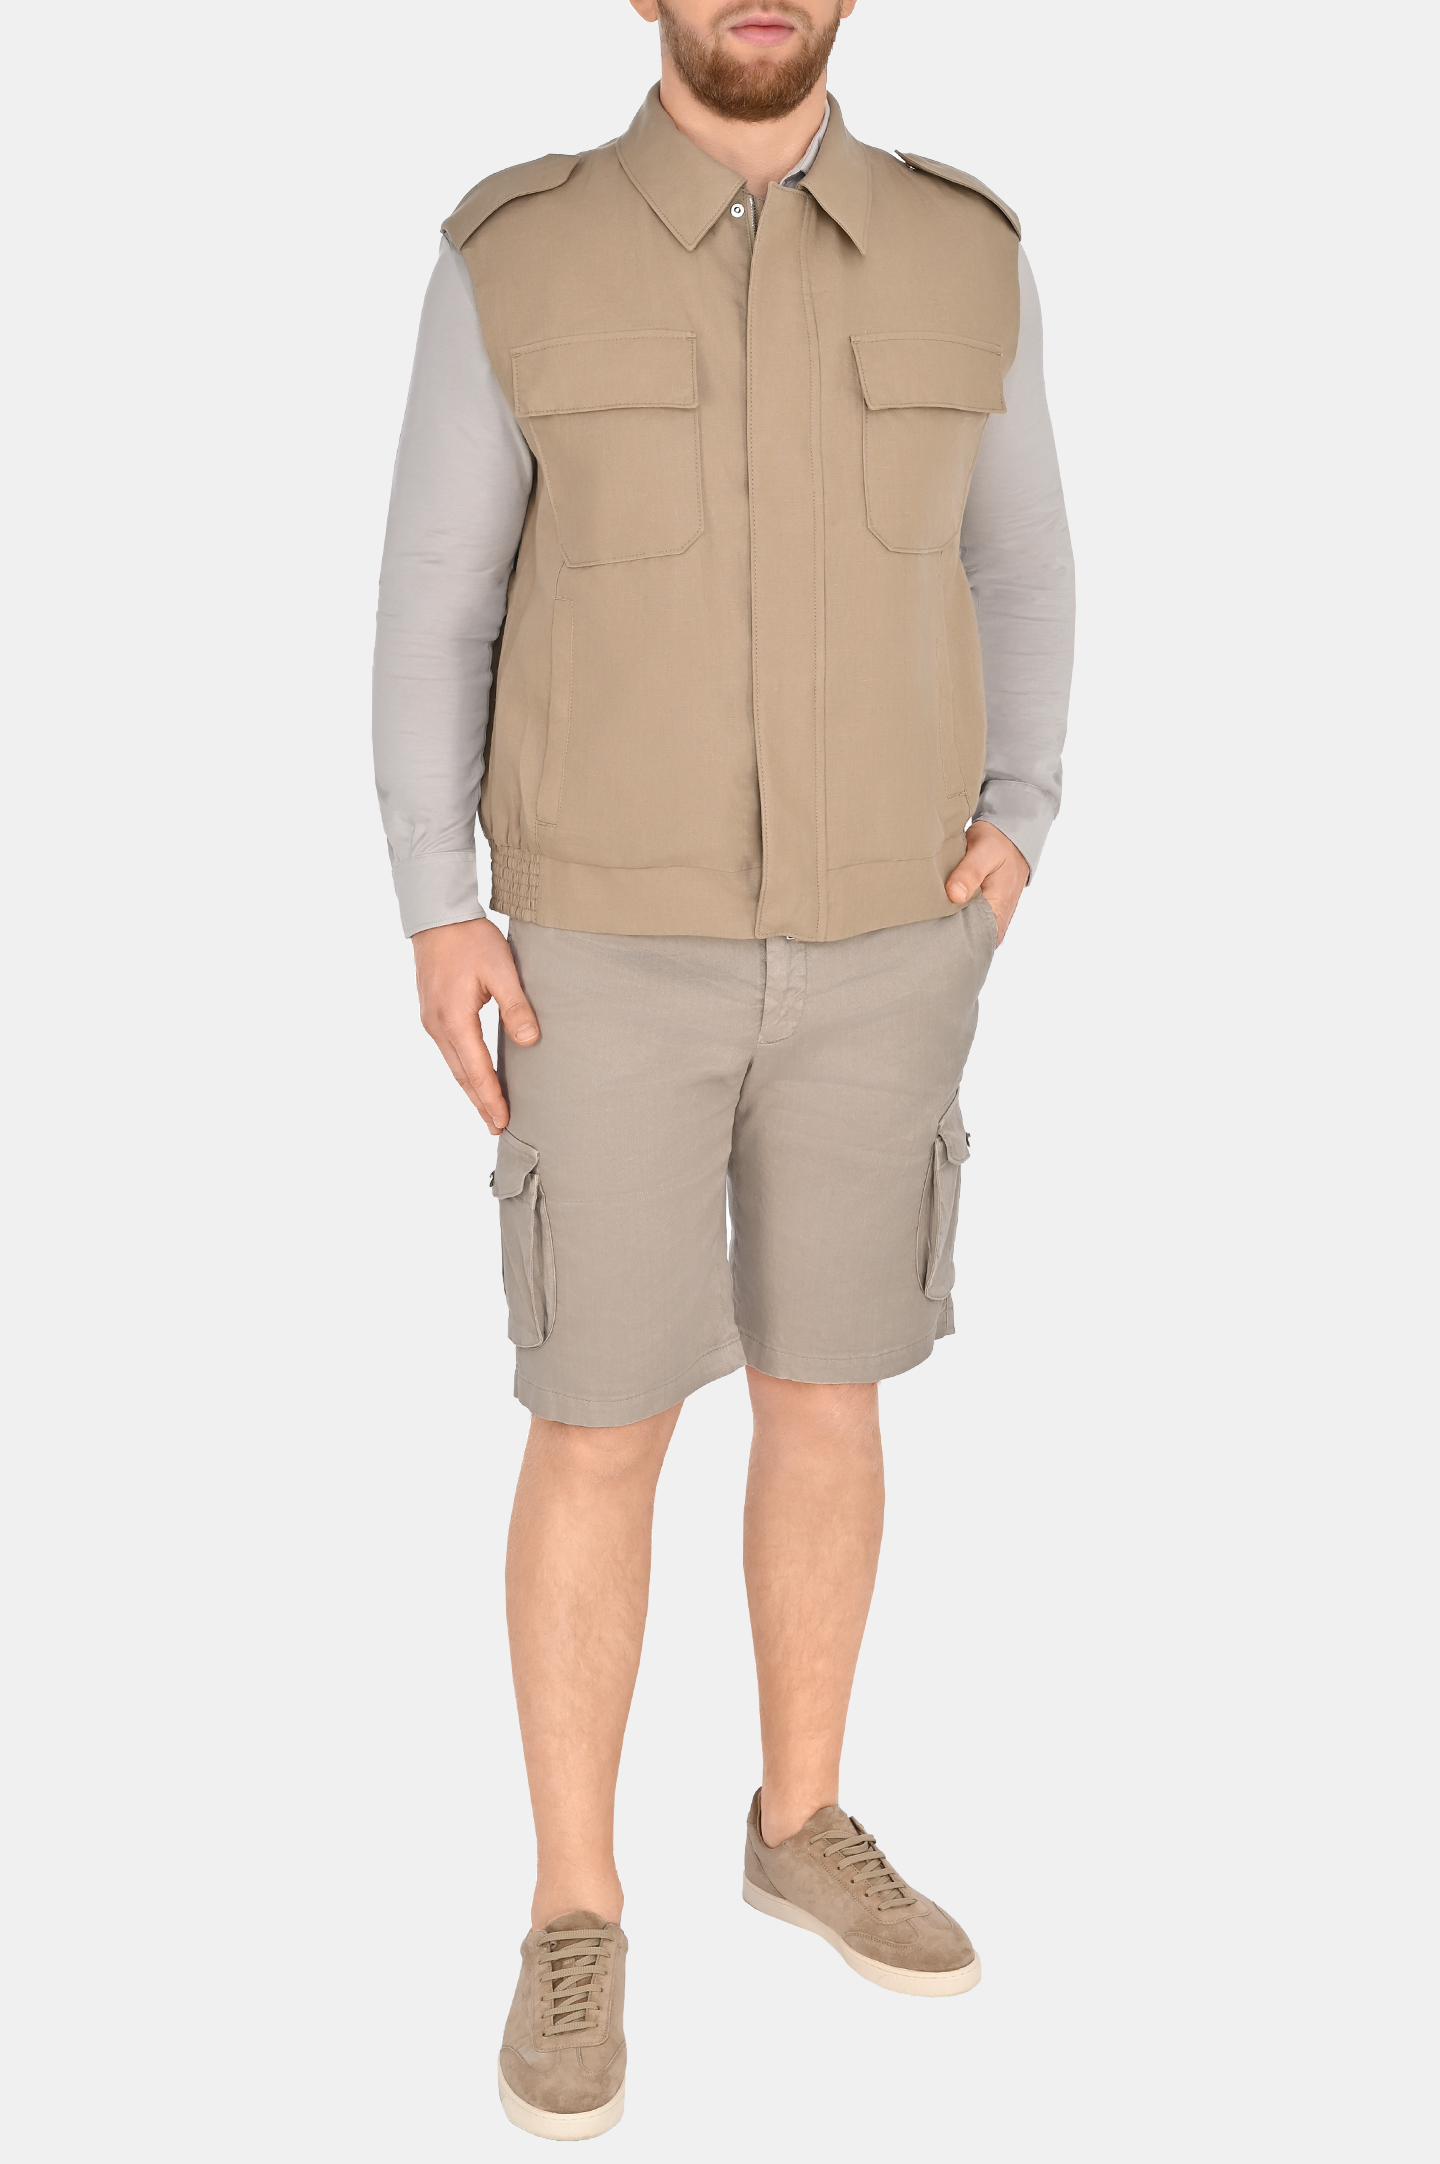 Джинсовые шорты с карманами KITON UFPPBK0604D0, цвет: Бежевый, Мужской